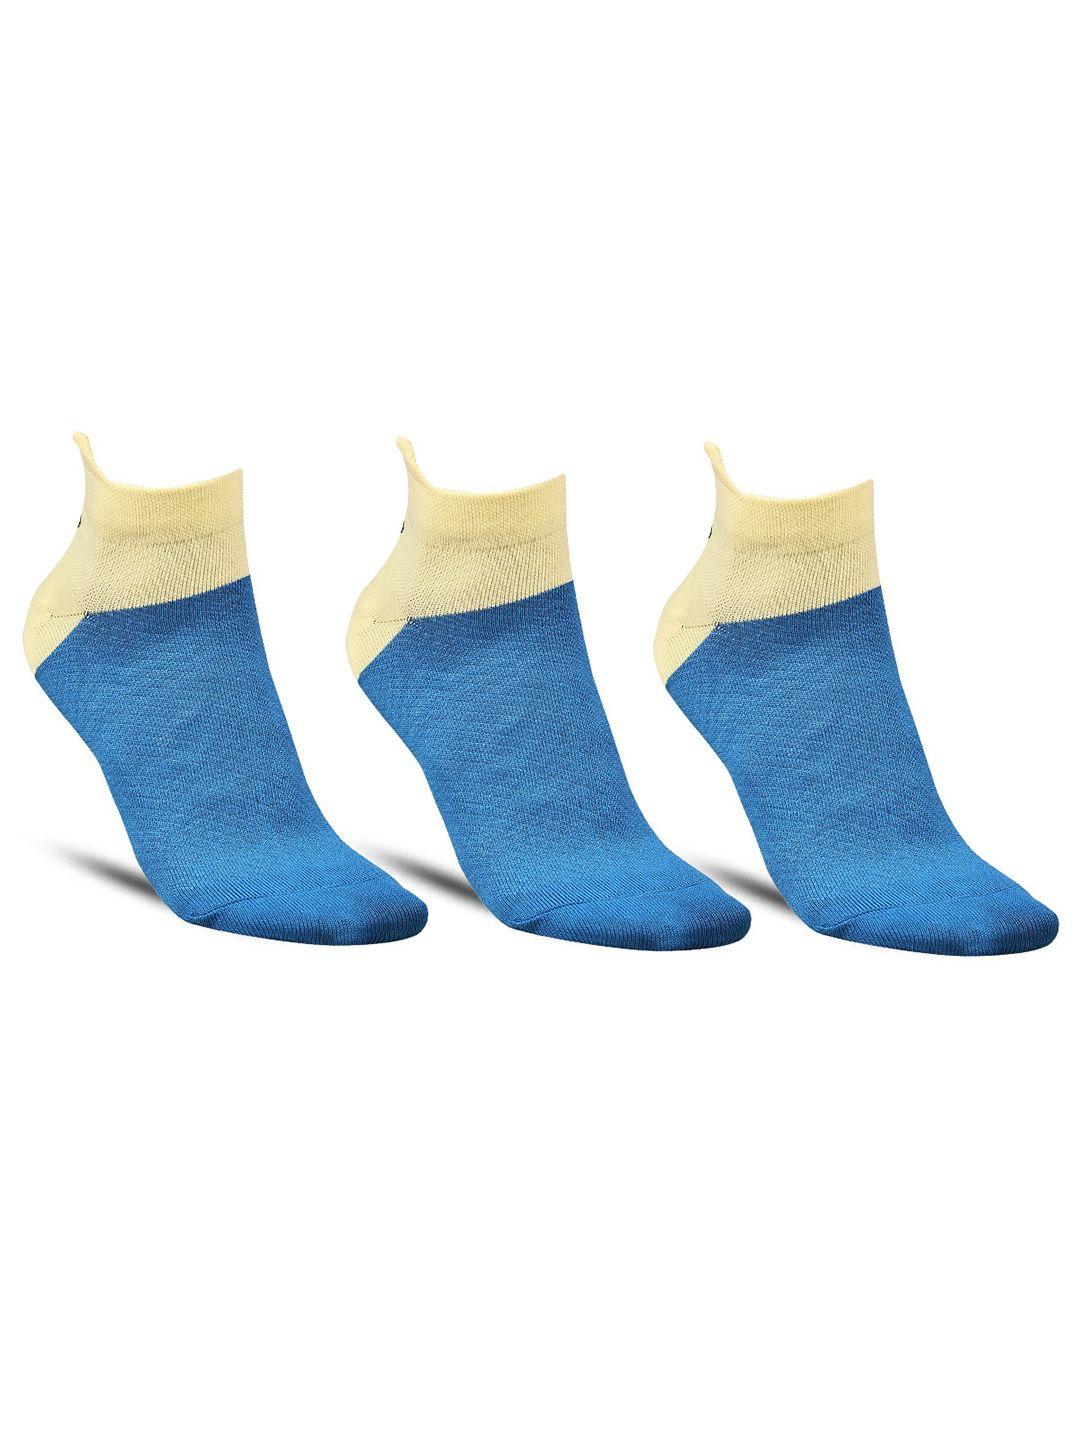 dollar socks men pack of 3 colorblocked ankle length socks